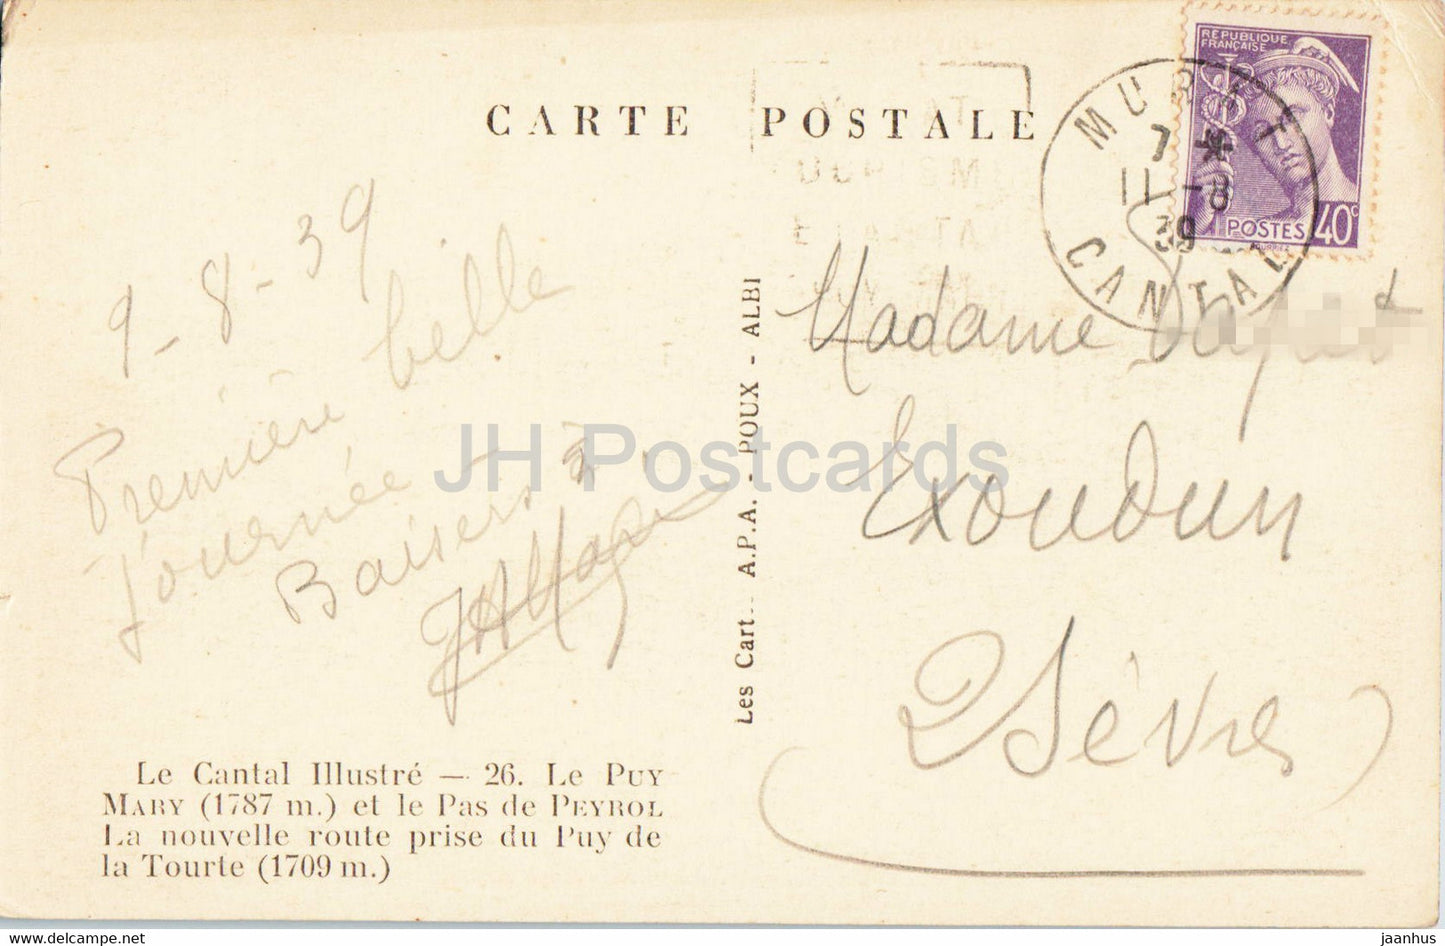 Le Cantal Illustre - Le Puy Mary et le Pas de Peyrol - old postcard - 1939 - France - used